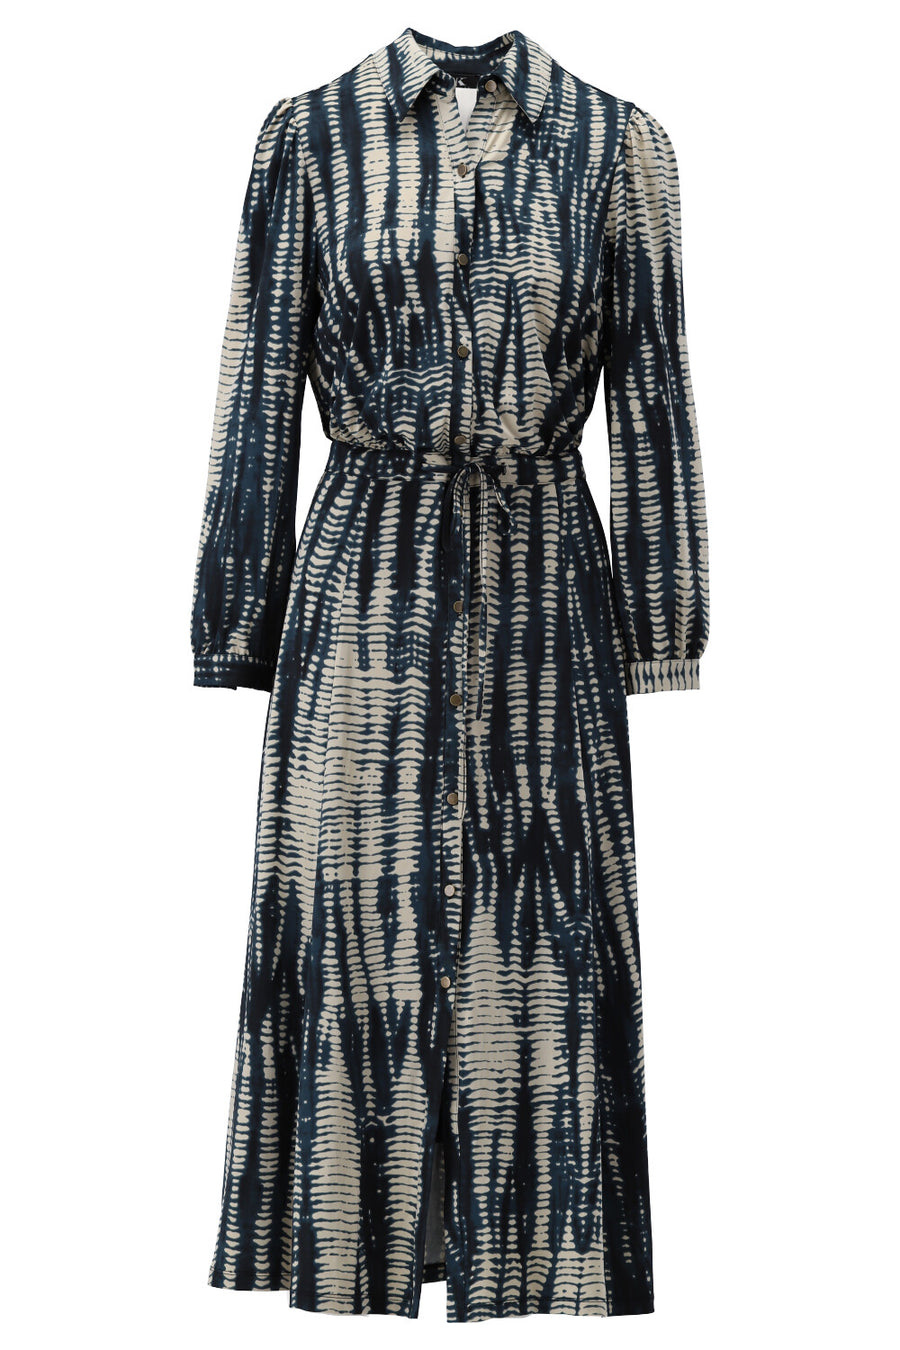 K-Design - Half long dress, with print and belt (V317)